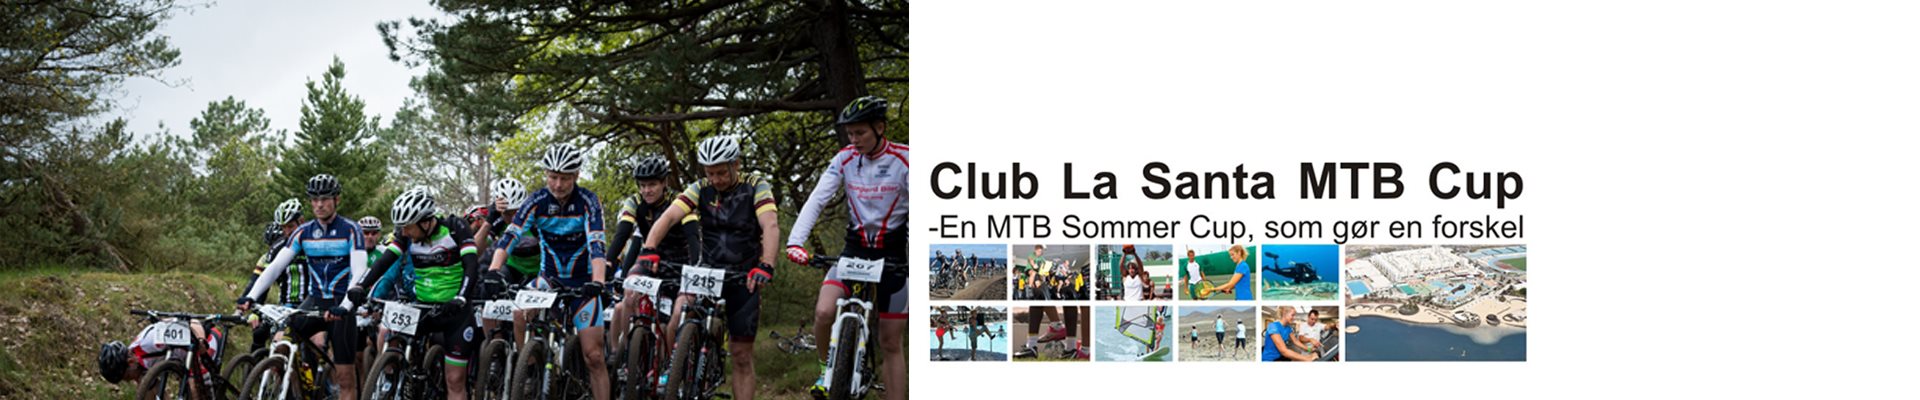 CLUB LA SANTA MTB CUP '18 - Samlet CUP